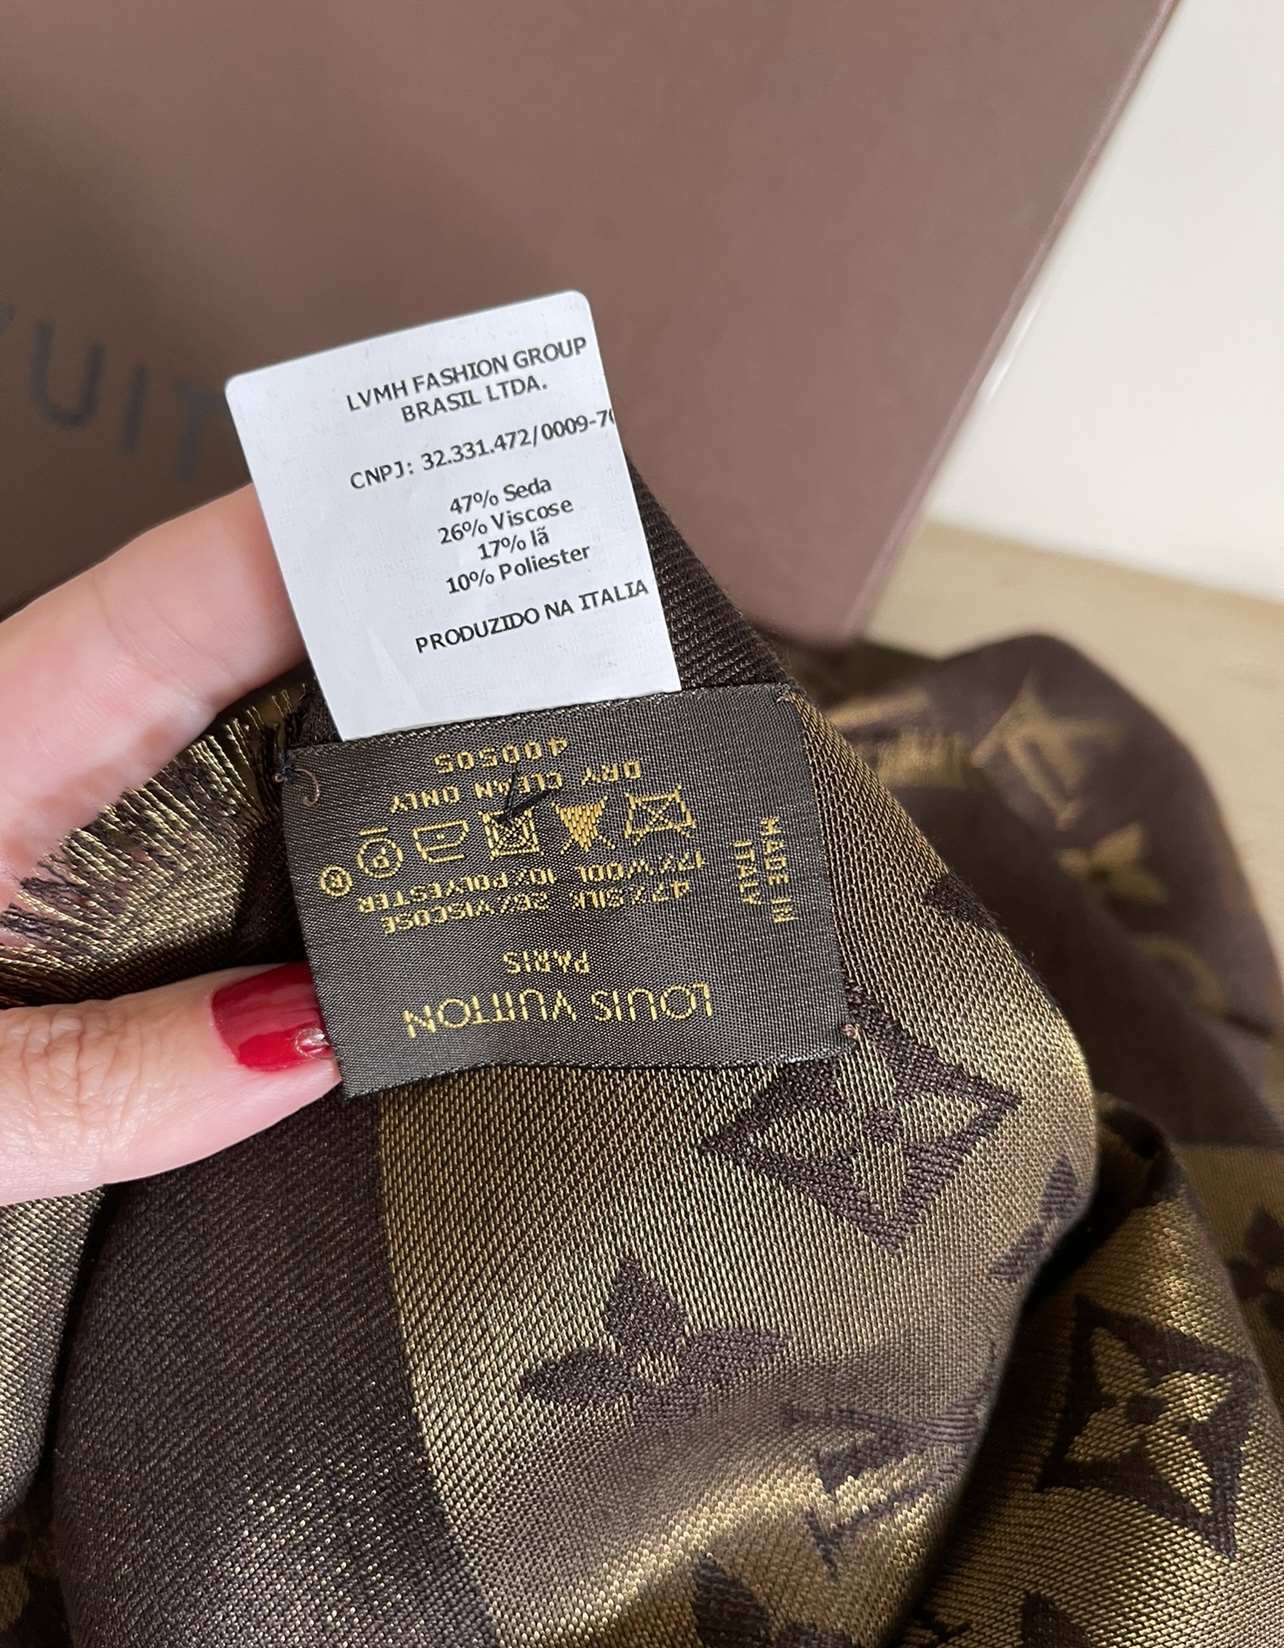 Echarpe/Lenço Louis Vuitton - Desapegos de Roupas quase novas ou nunca  usadas para bebês, crianças e mamães. 1007253